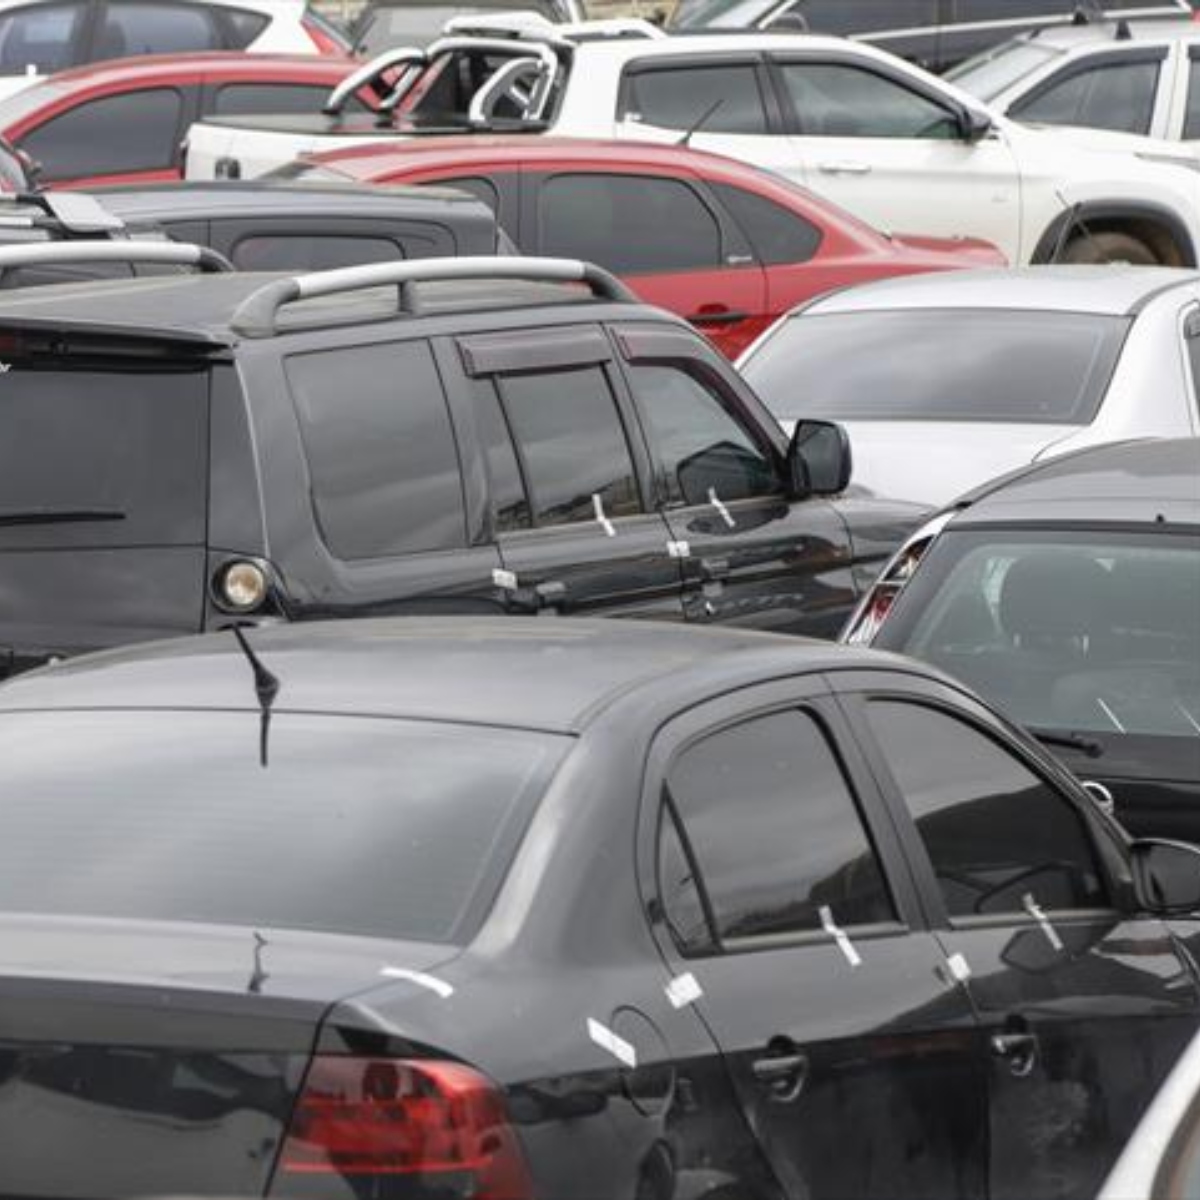  Leilão online da Setran oferece 78 veículos em condições de circulação; confira 